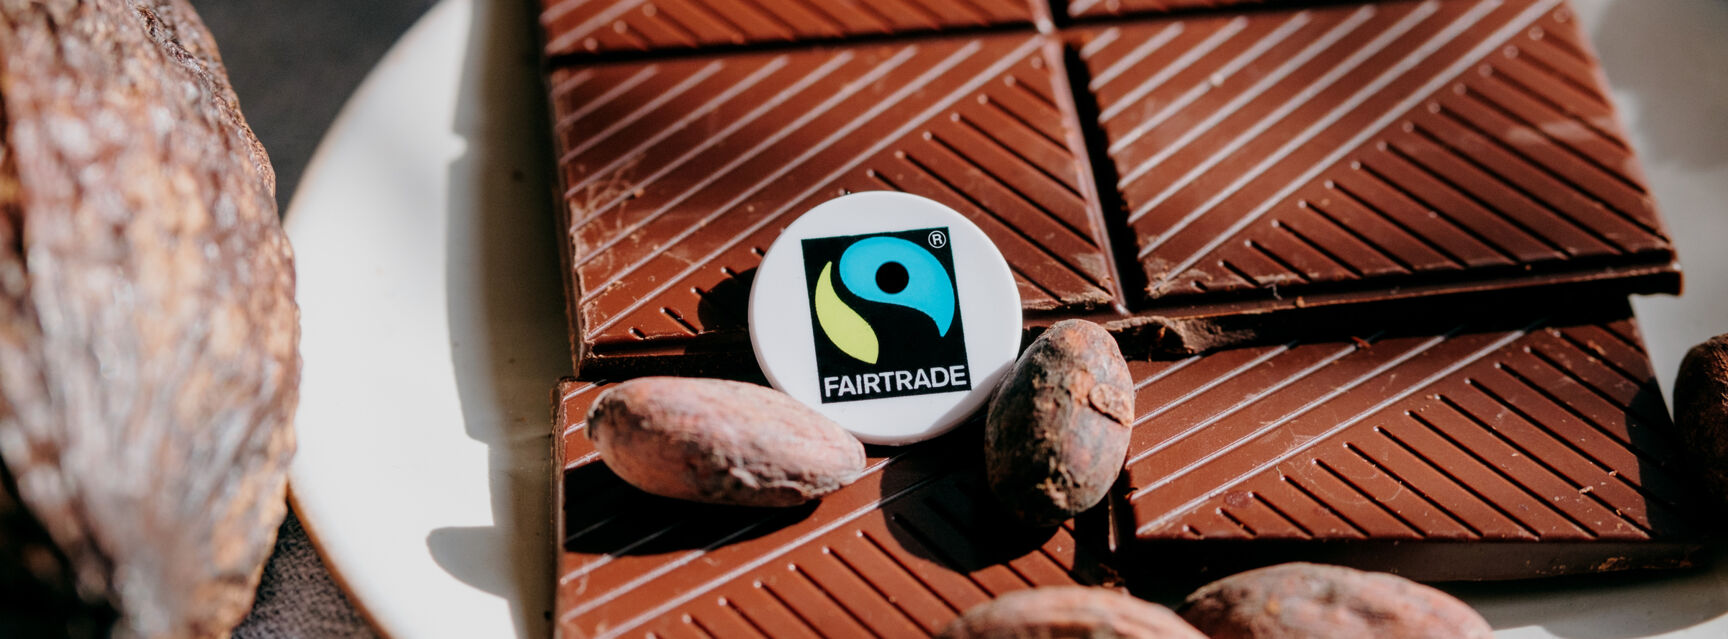 Fairtrade Kakako_Ilkay Karakurt